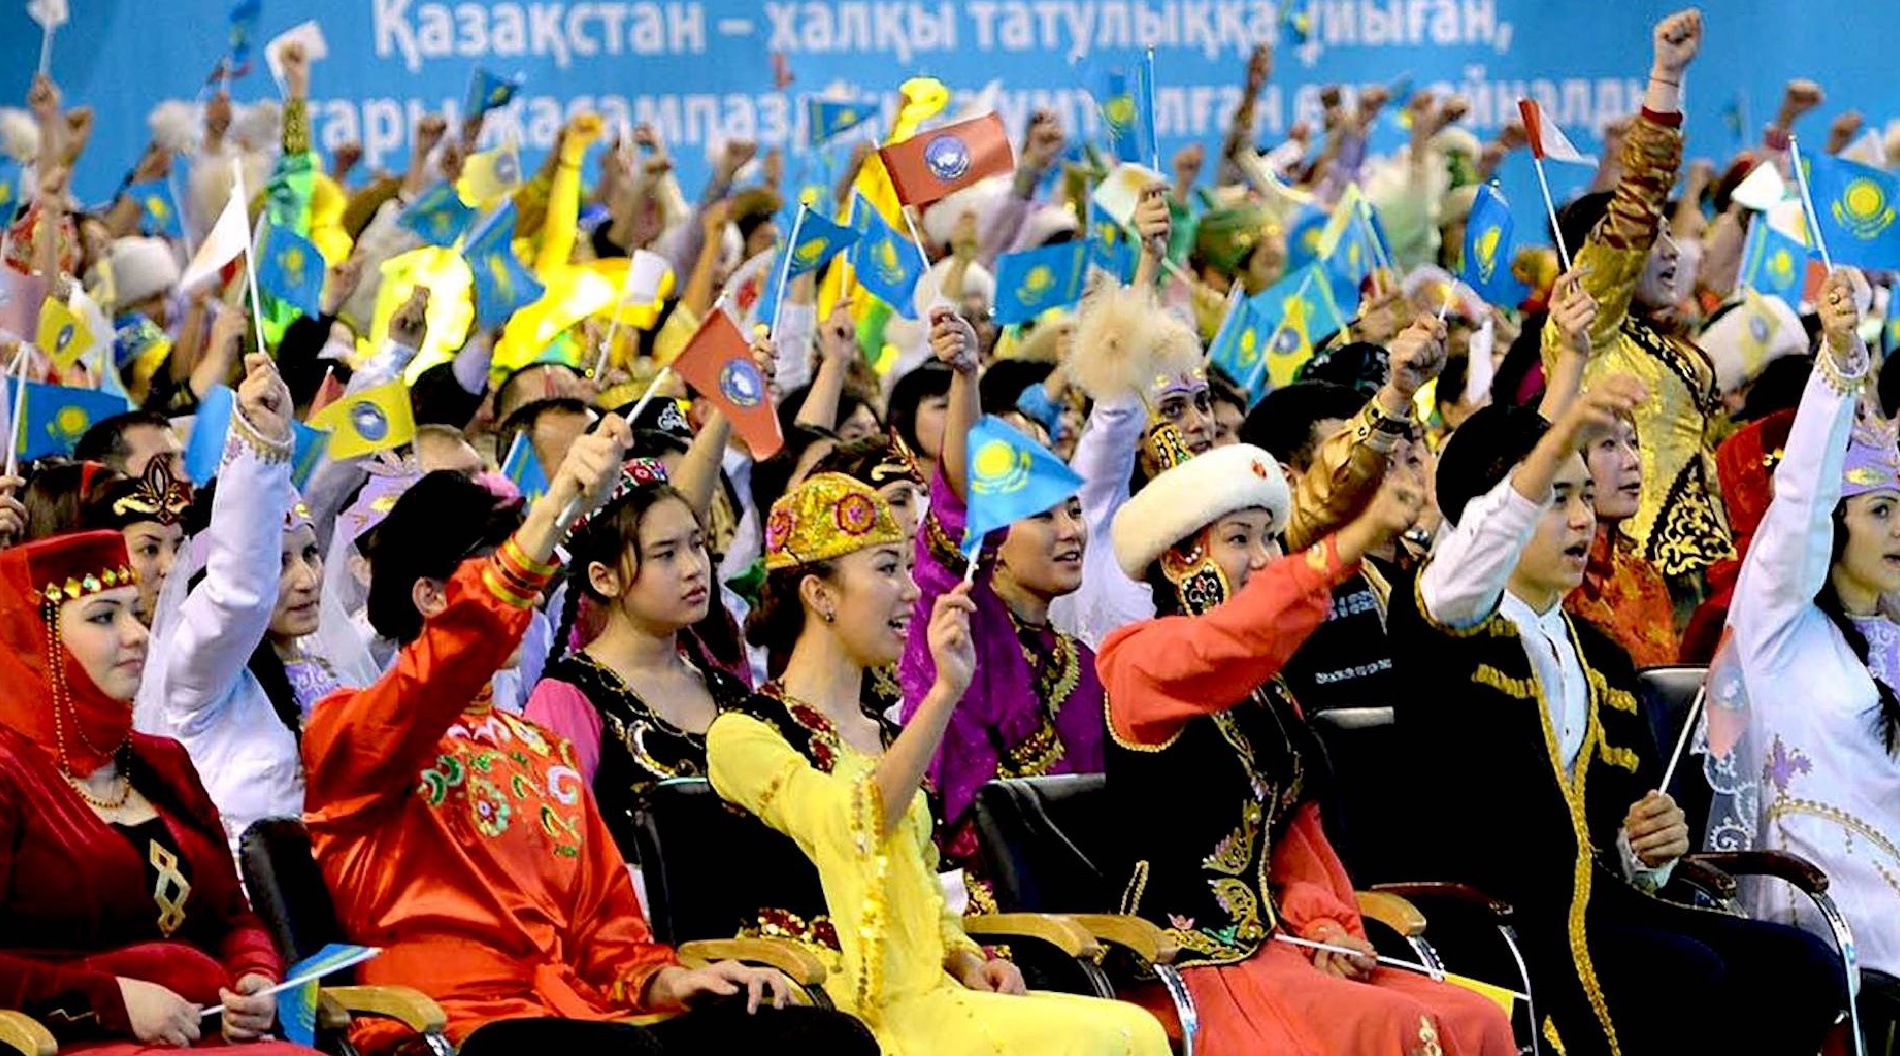 дружба народов казахстана картинки